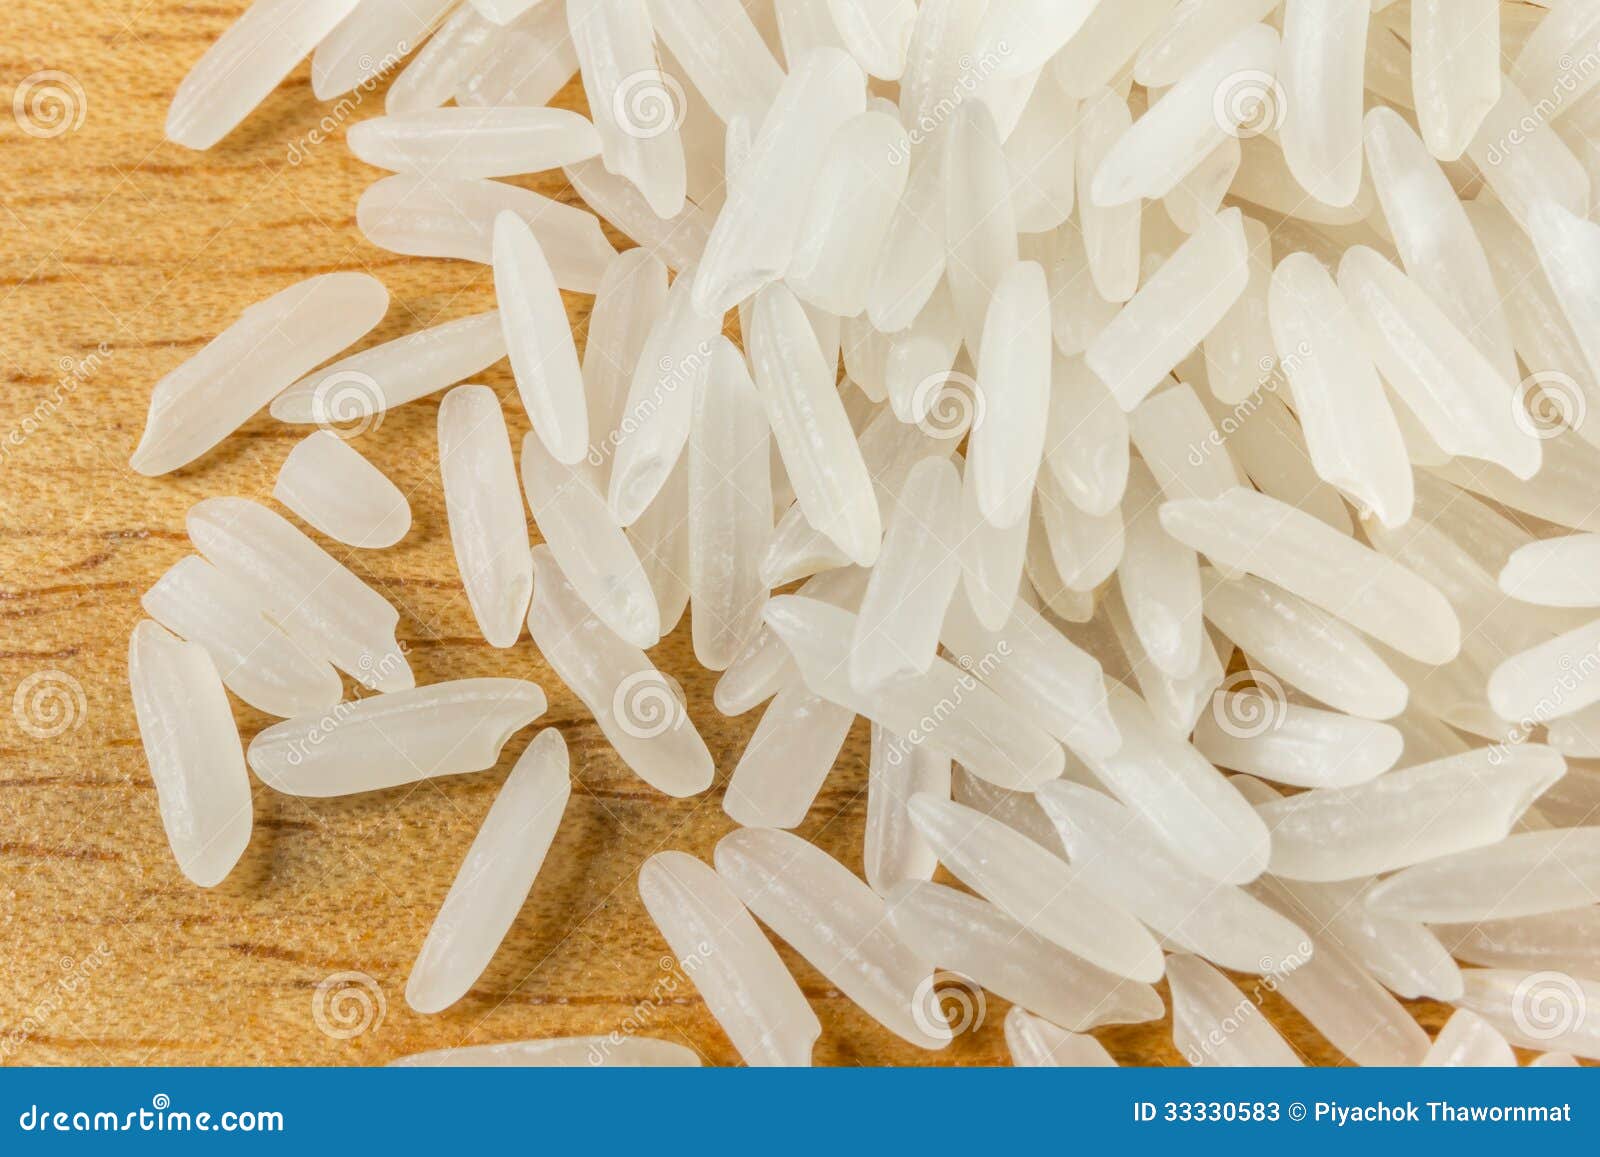  - thai-jasmine-rice-raw-white-close-up-wood-background-33330583